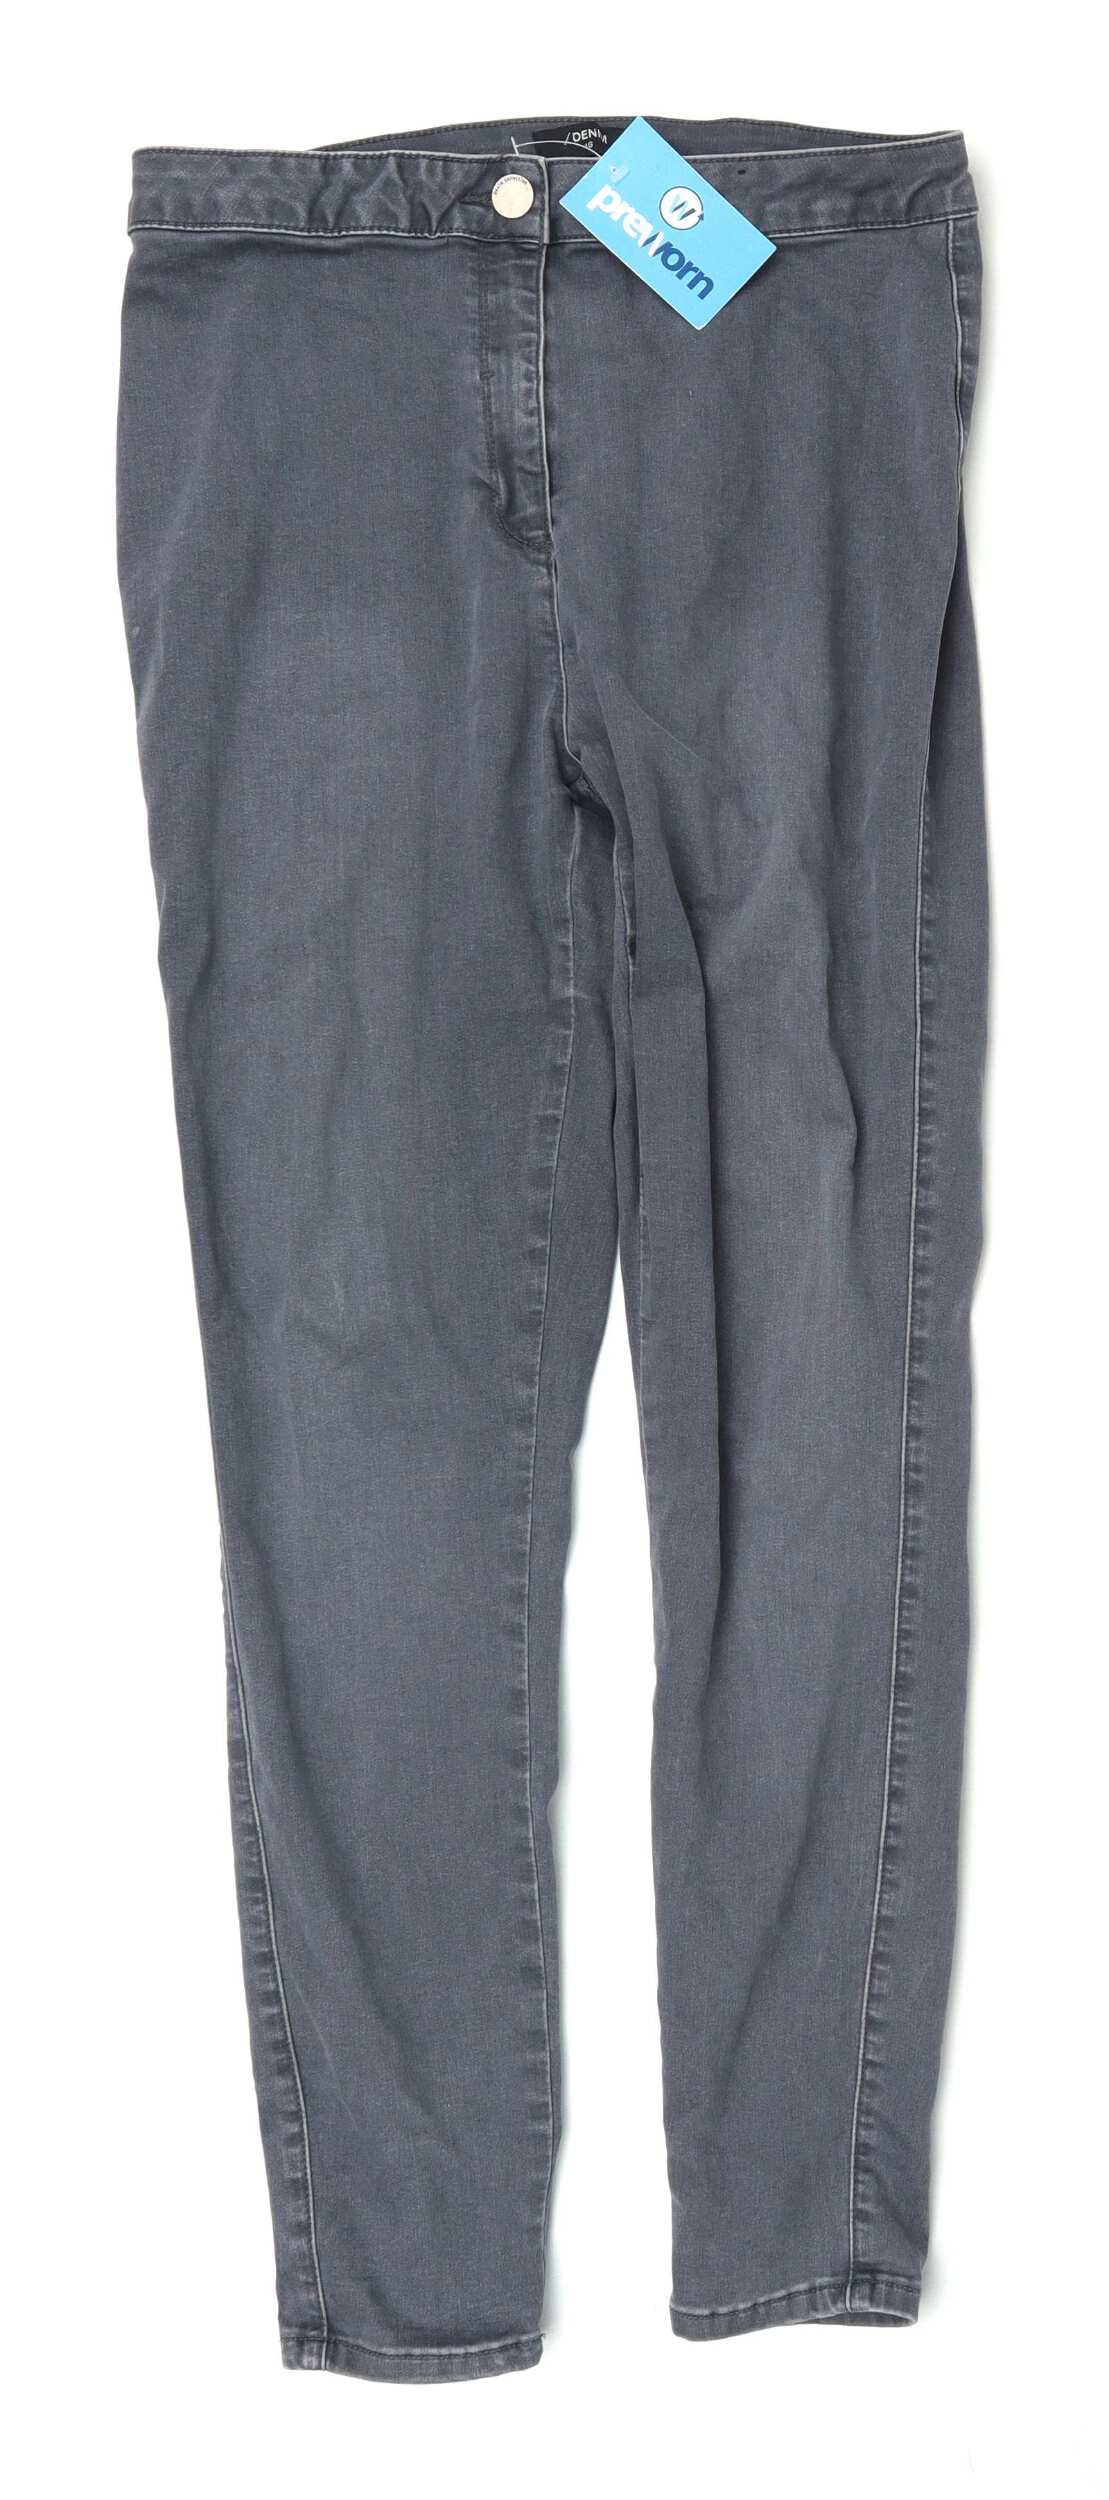 grey jeans matalan